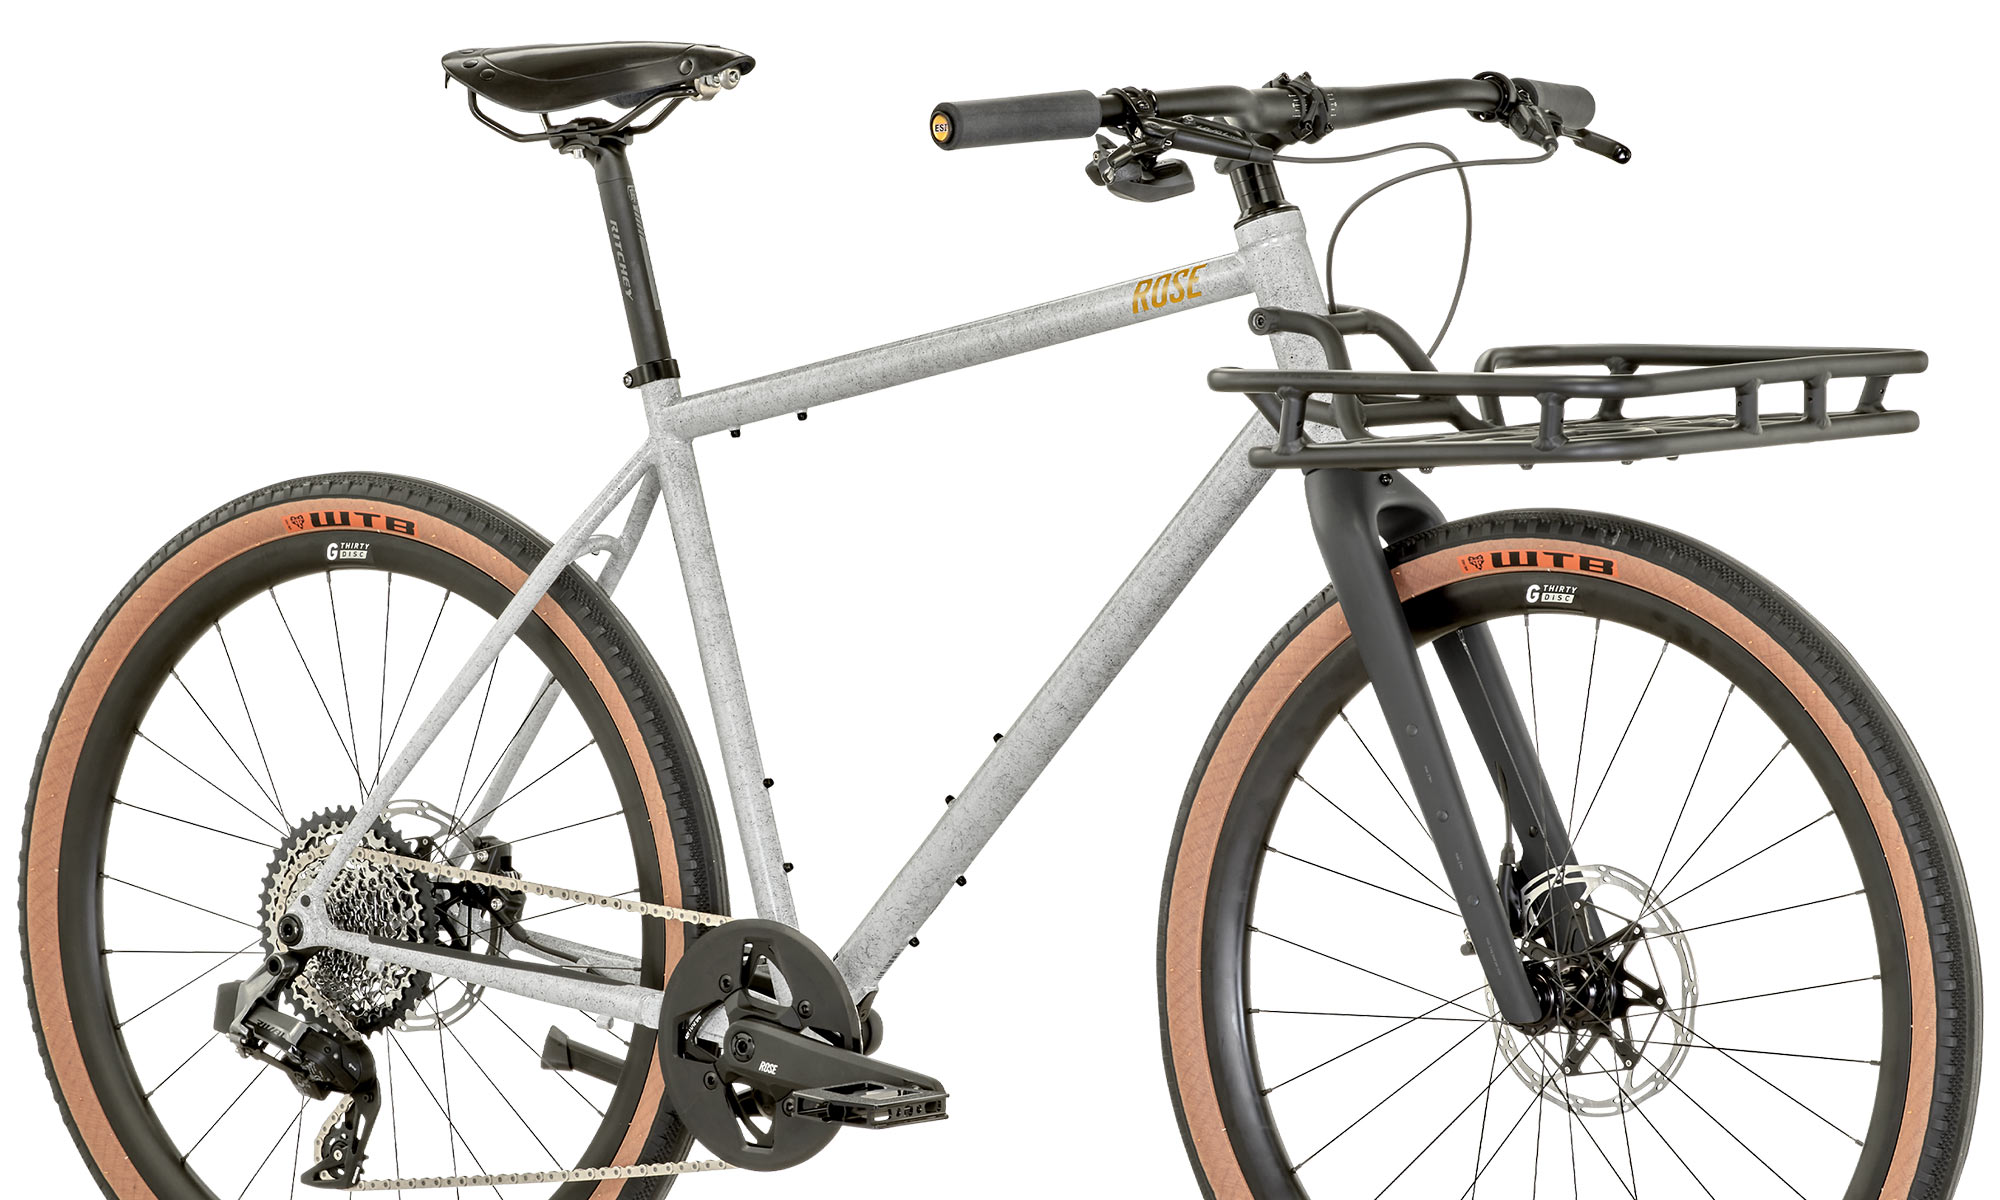 Rose Hobo steel flatbar hybrid urban commuter gravel bike, frame detail